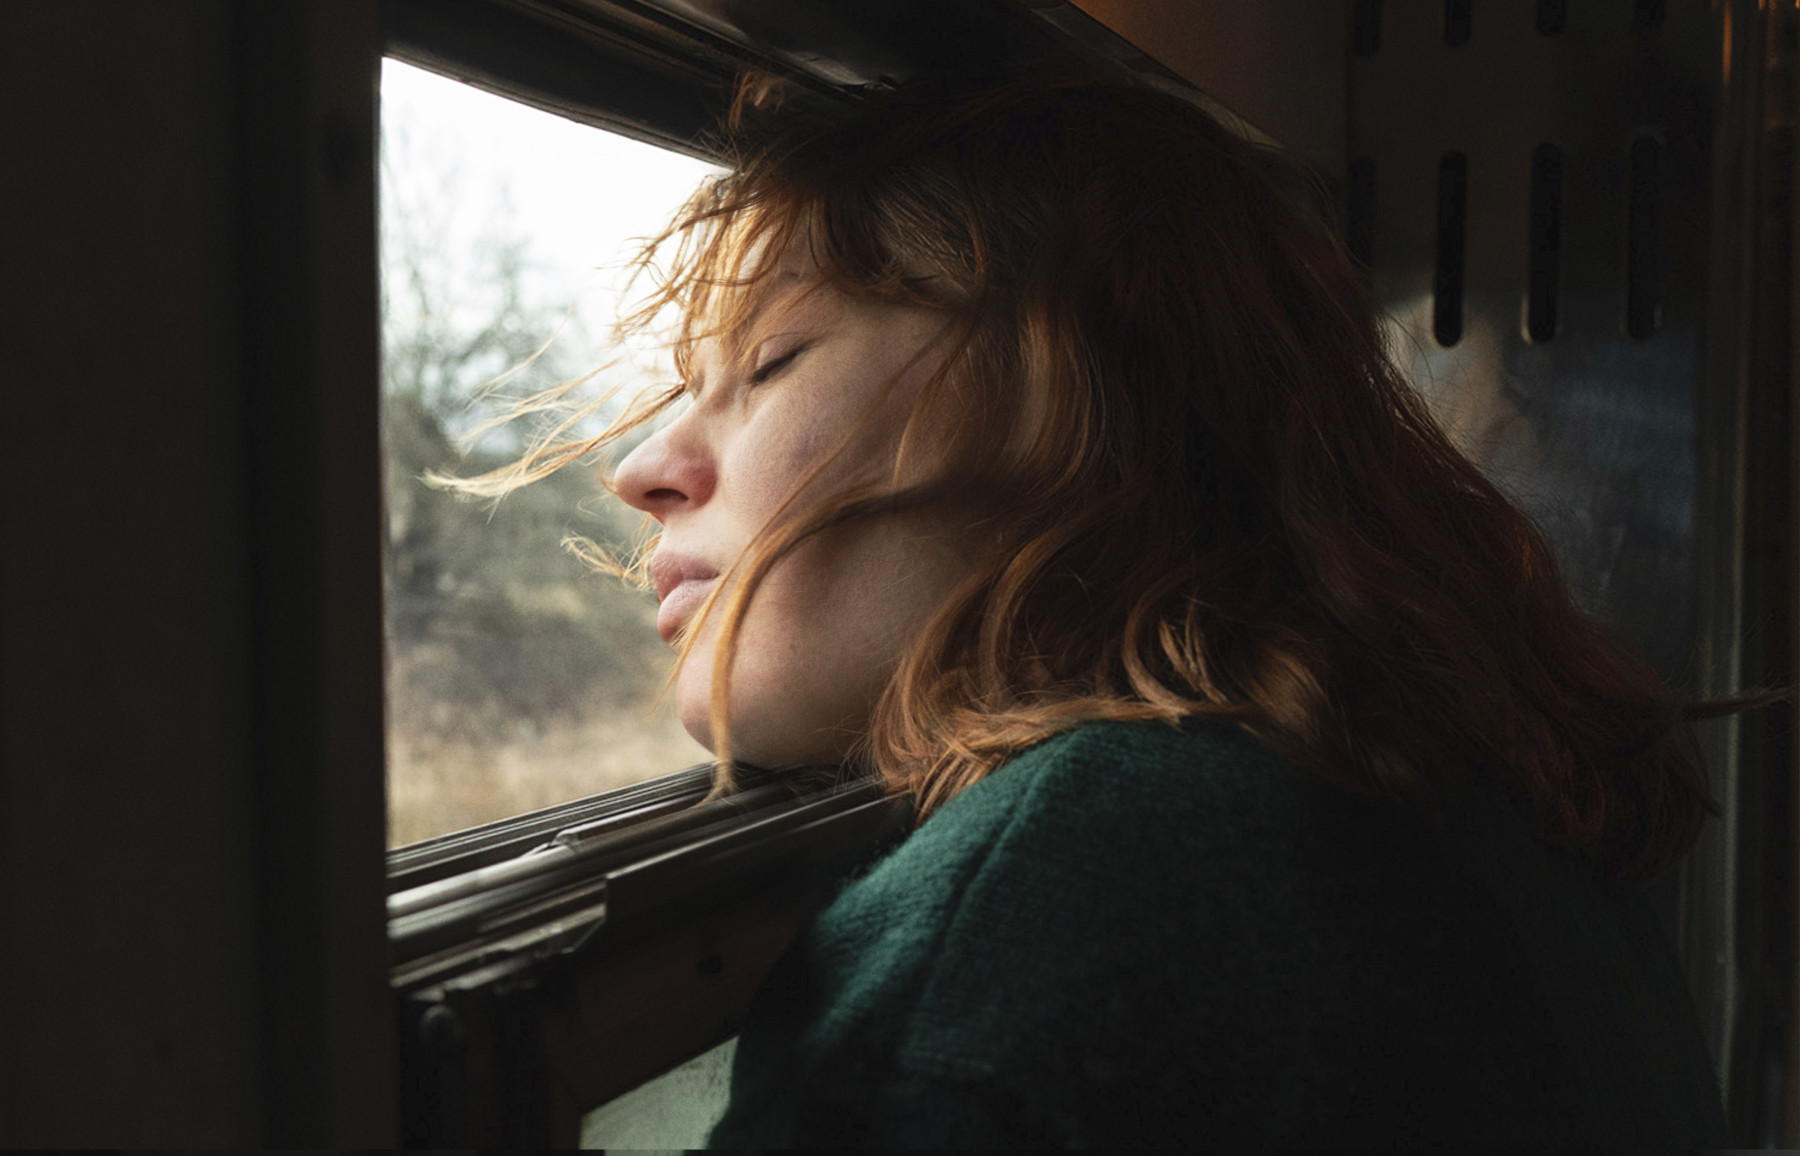 بعيون مغلقة، امرأة يتطاير شعرها في الهواء من خلال نافذة مفتوحة للقطار.